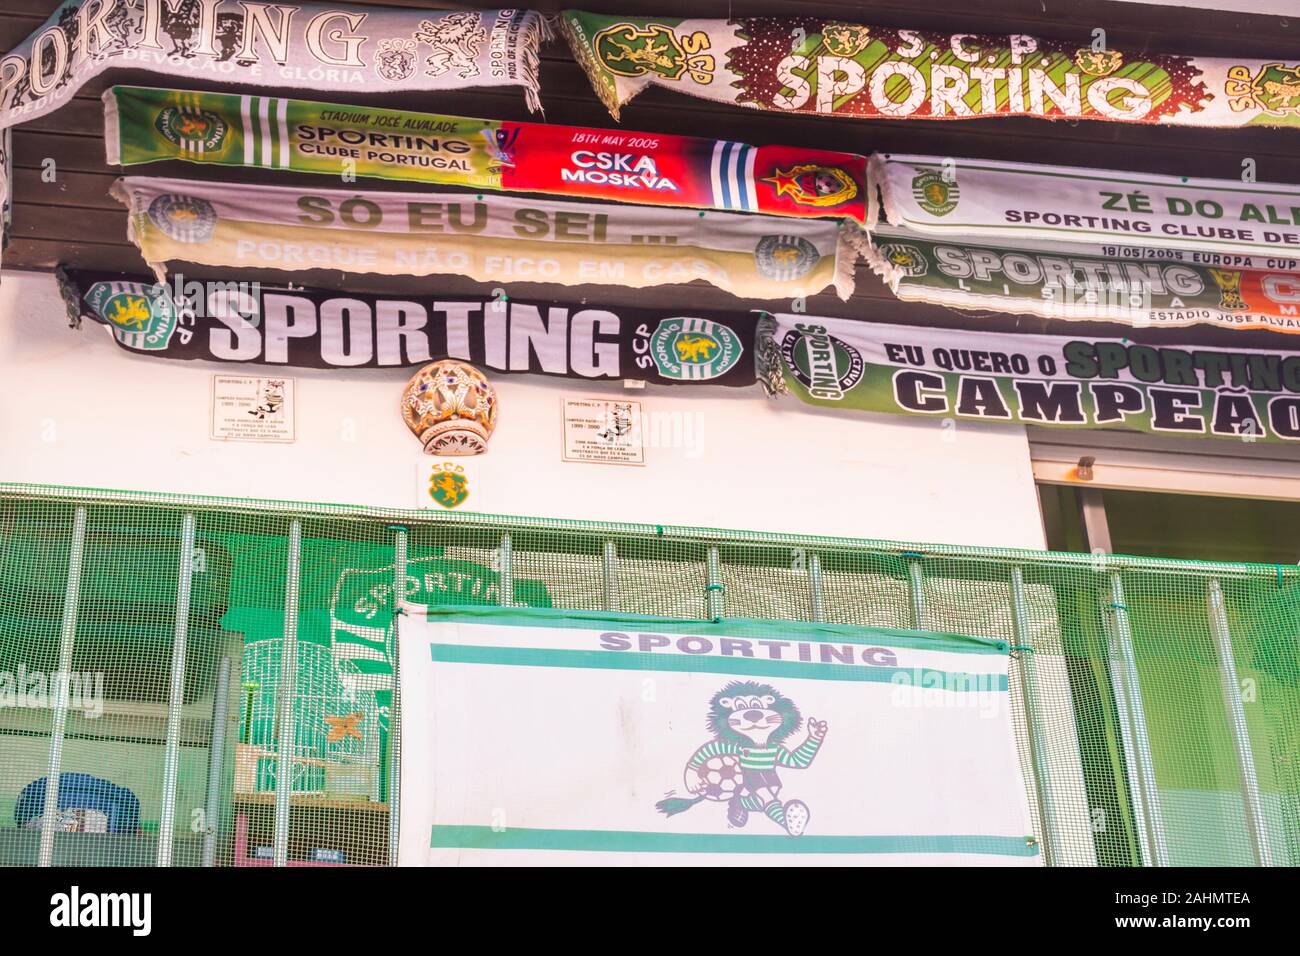 Sporting club de football de Lisbonne foulards ventilateur et bannières sur balcon Banque D'Images